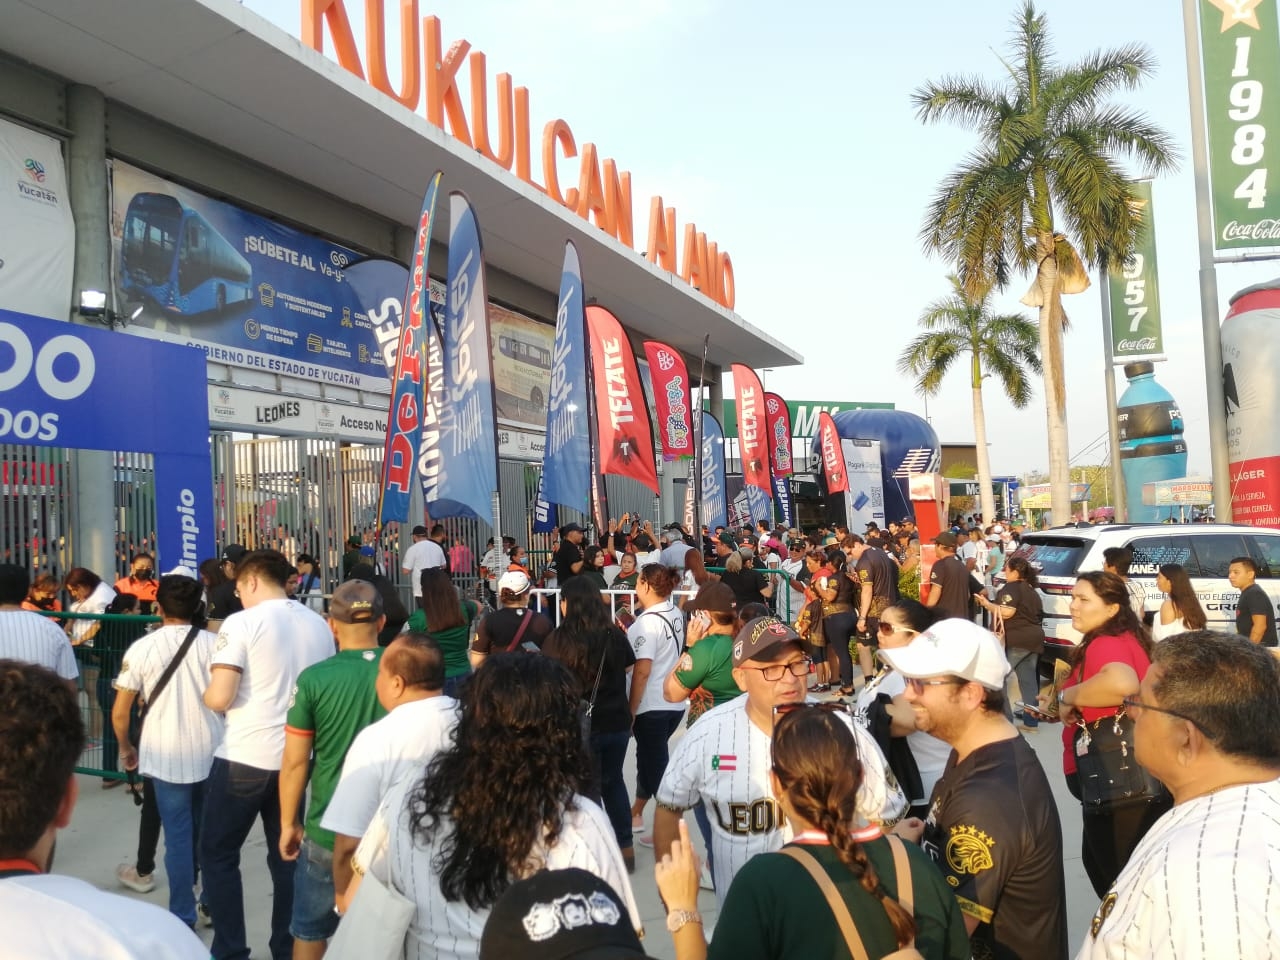 Aficionados llegan al Kululcán en Mérida para el partido de Leones vs Guerreos: EN VIVO